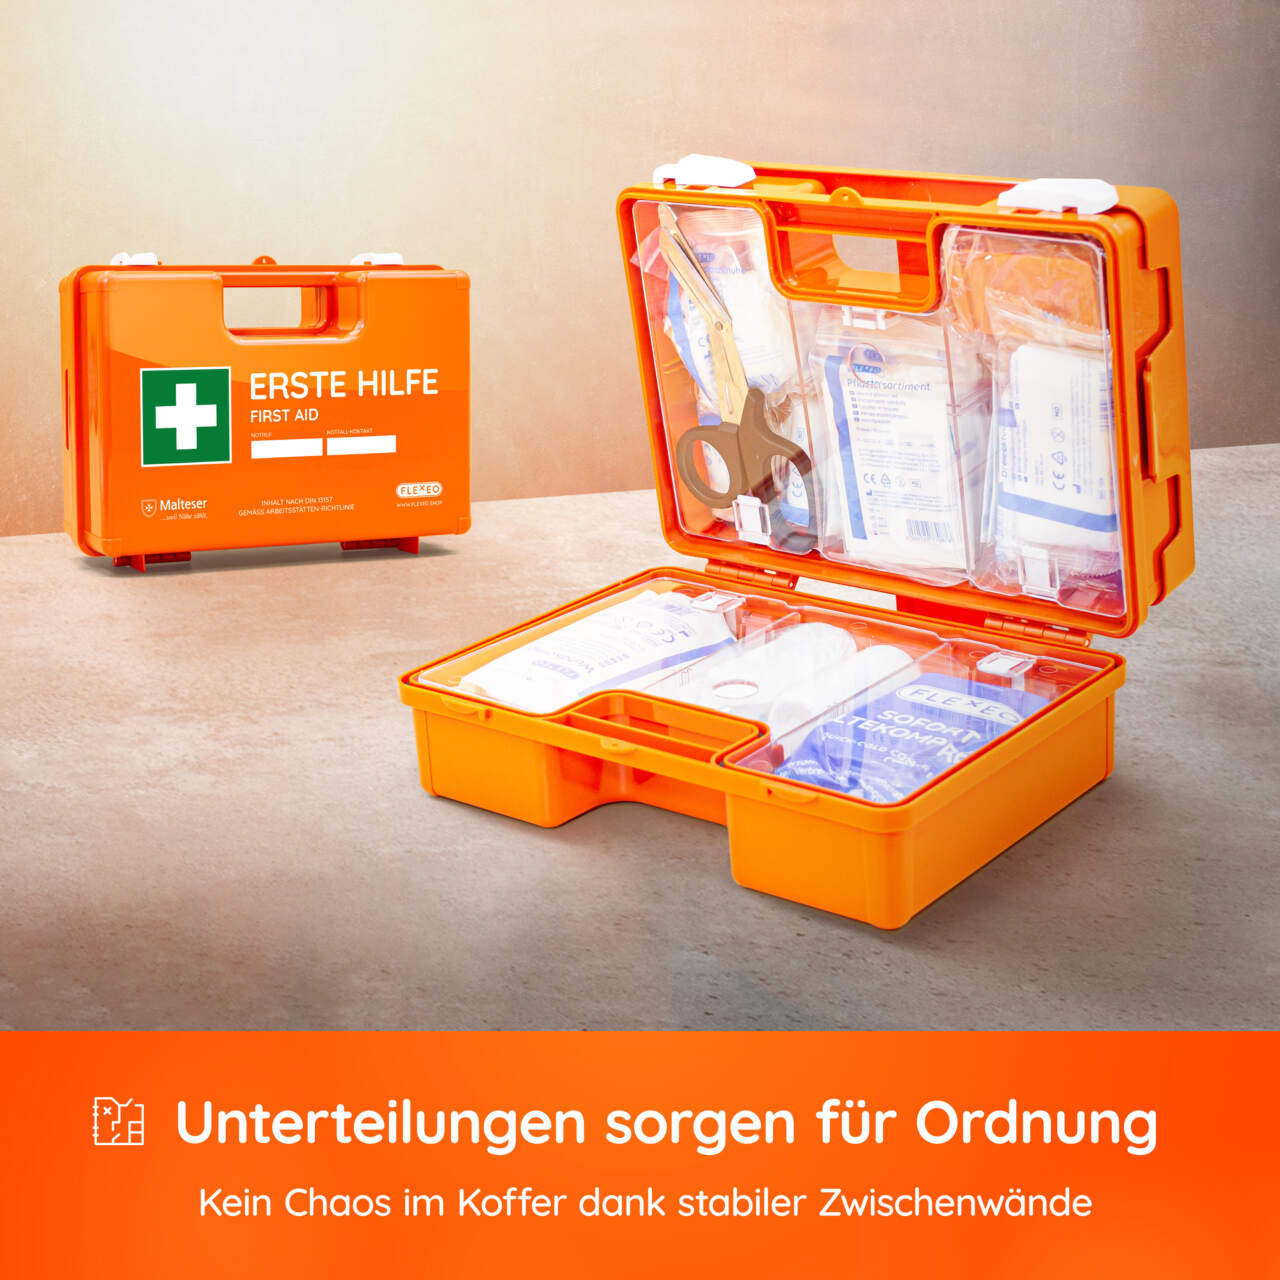 Erste-Hilfe-Koffer DIN 13157, inkl. FLEXEO Augenspülstation